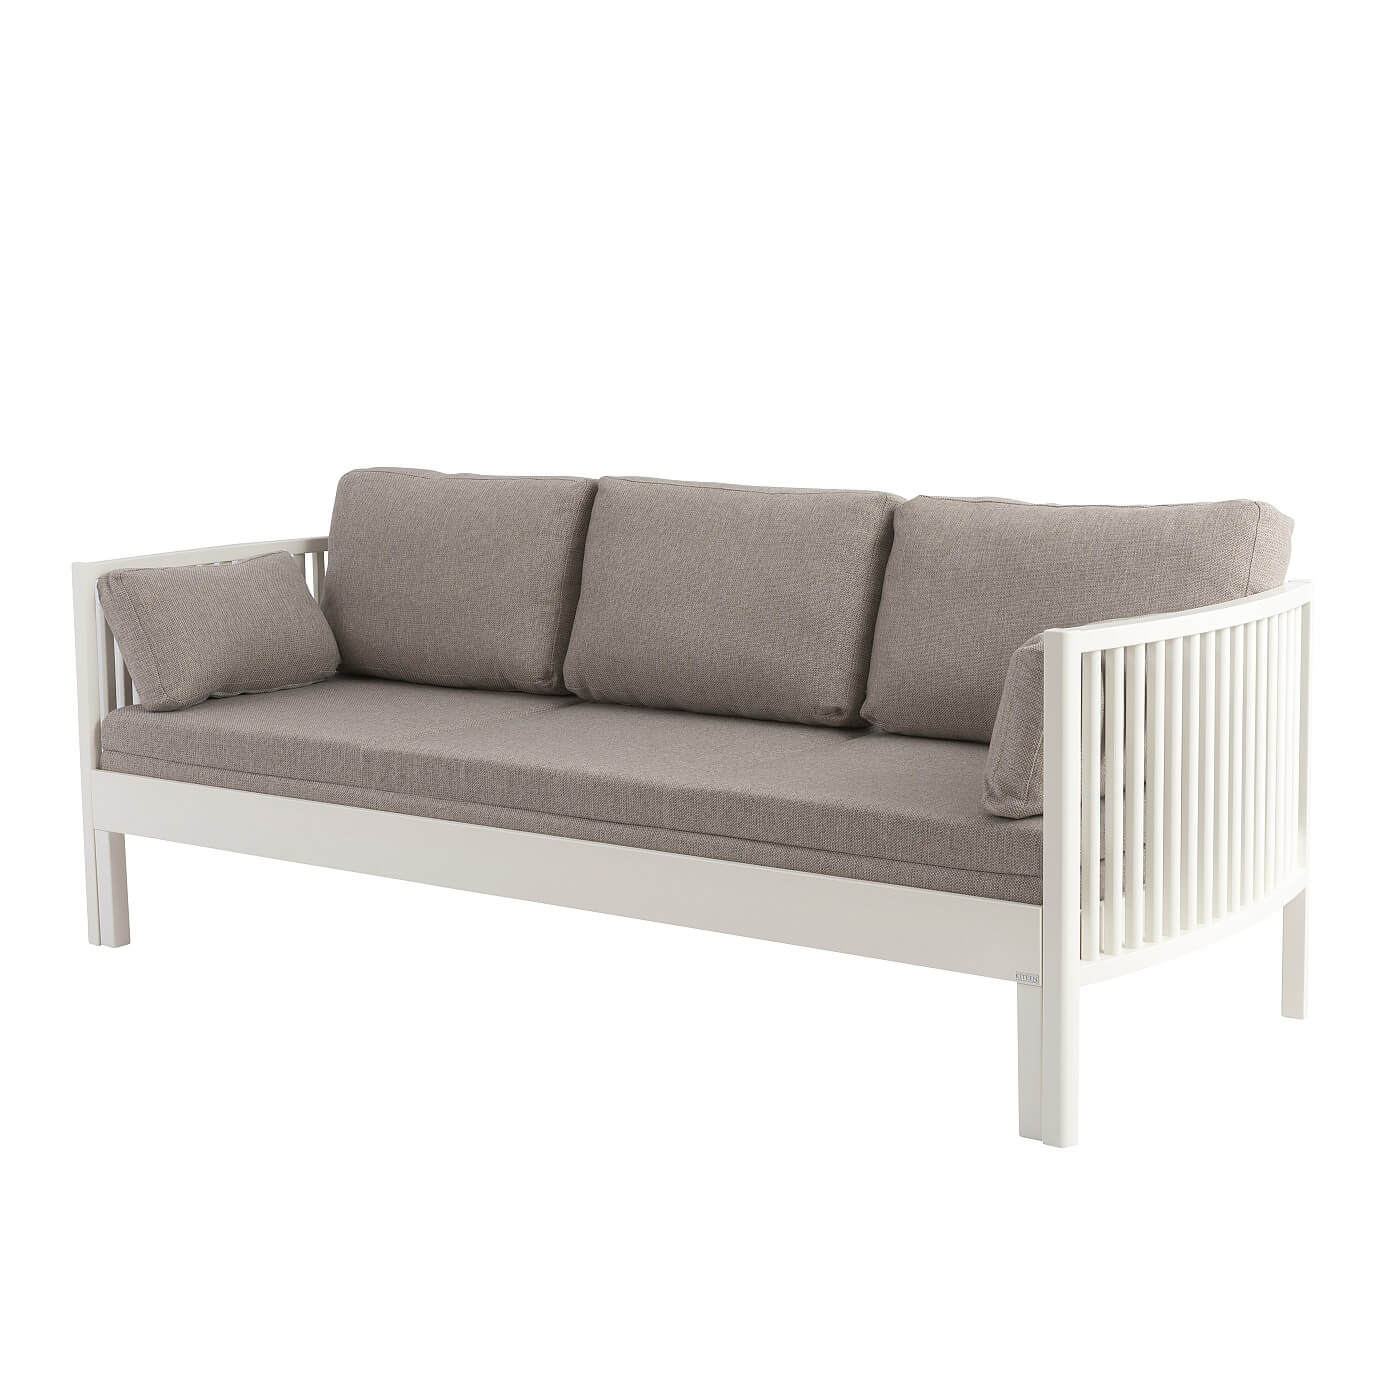 Sofa design AARRE rozkładana z drewna brzozy skandynawskiej lakierowanej na biało, z szarym materacem. Nowoczesne minimalistyczne wzornictwo